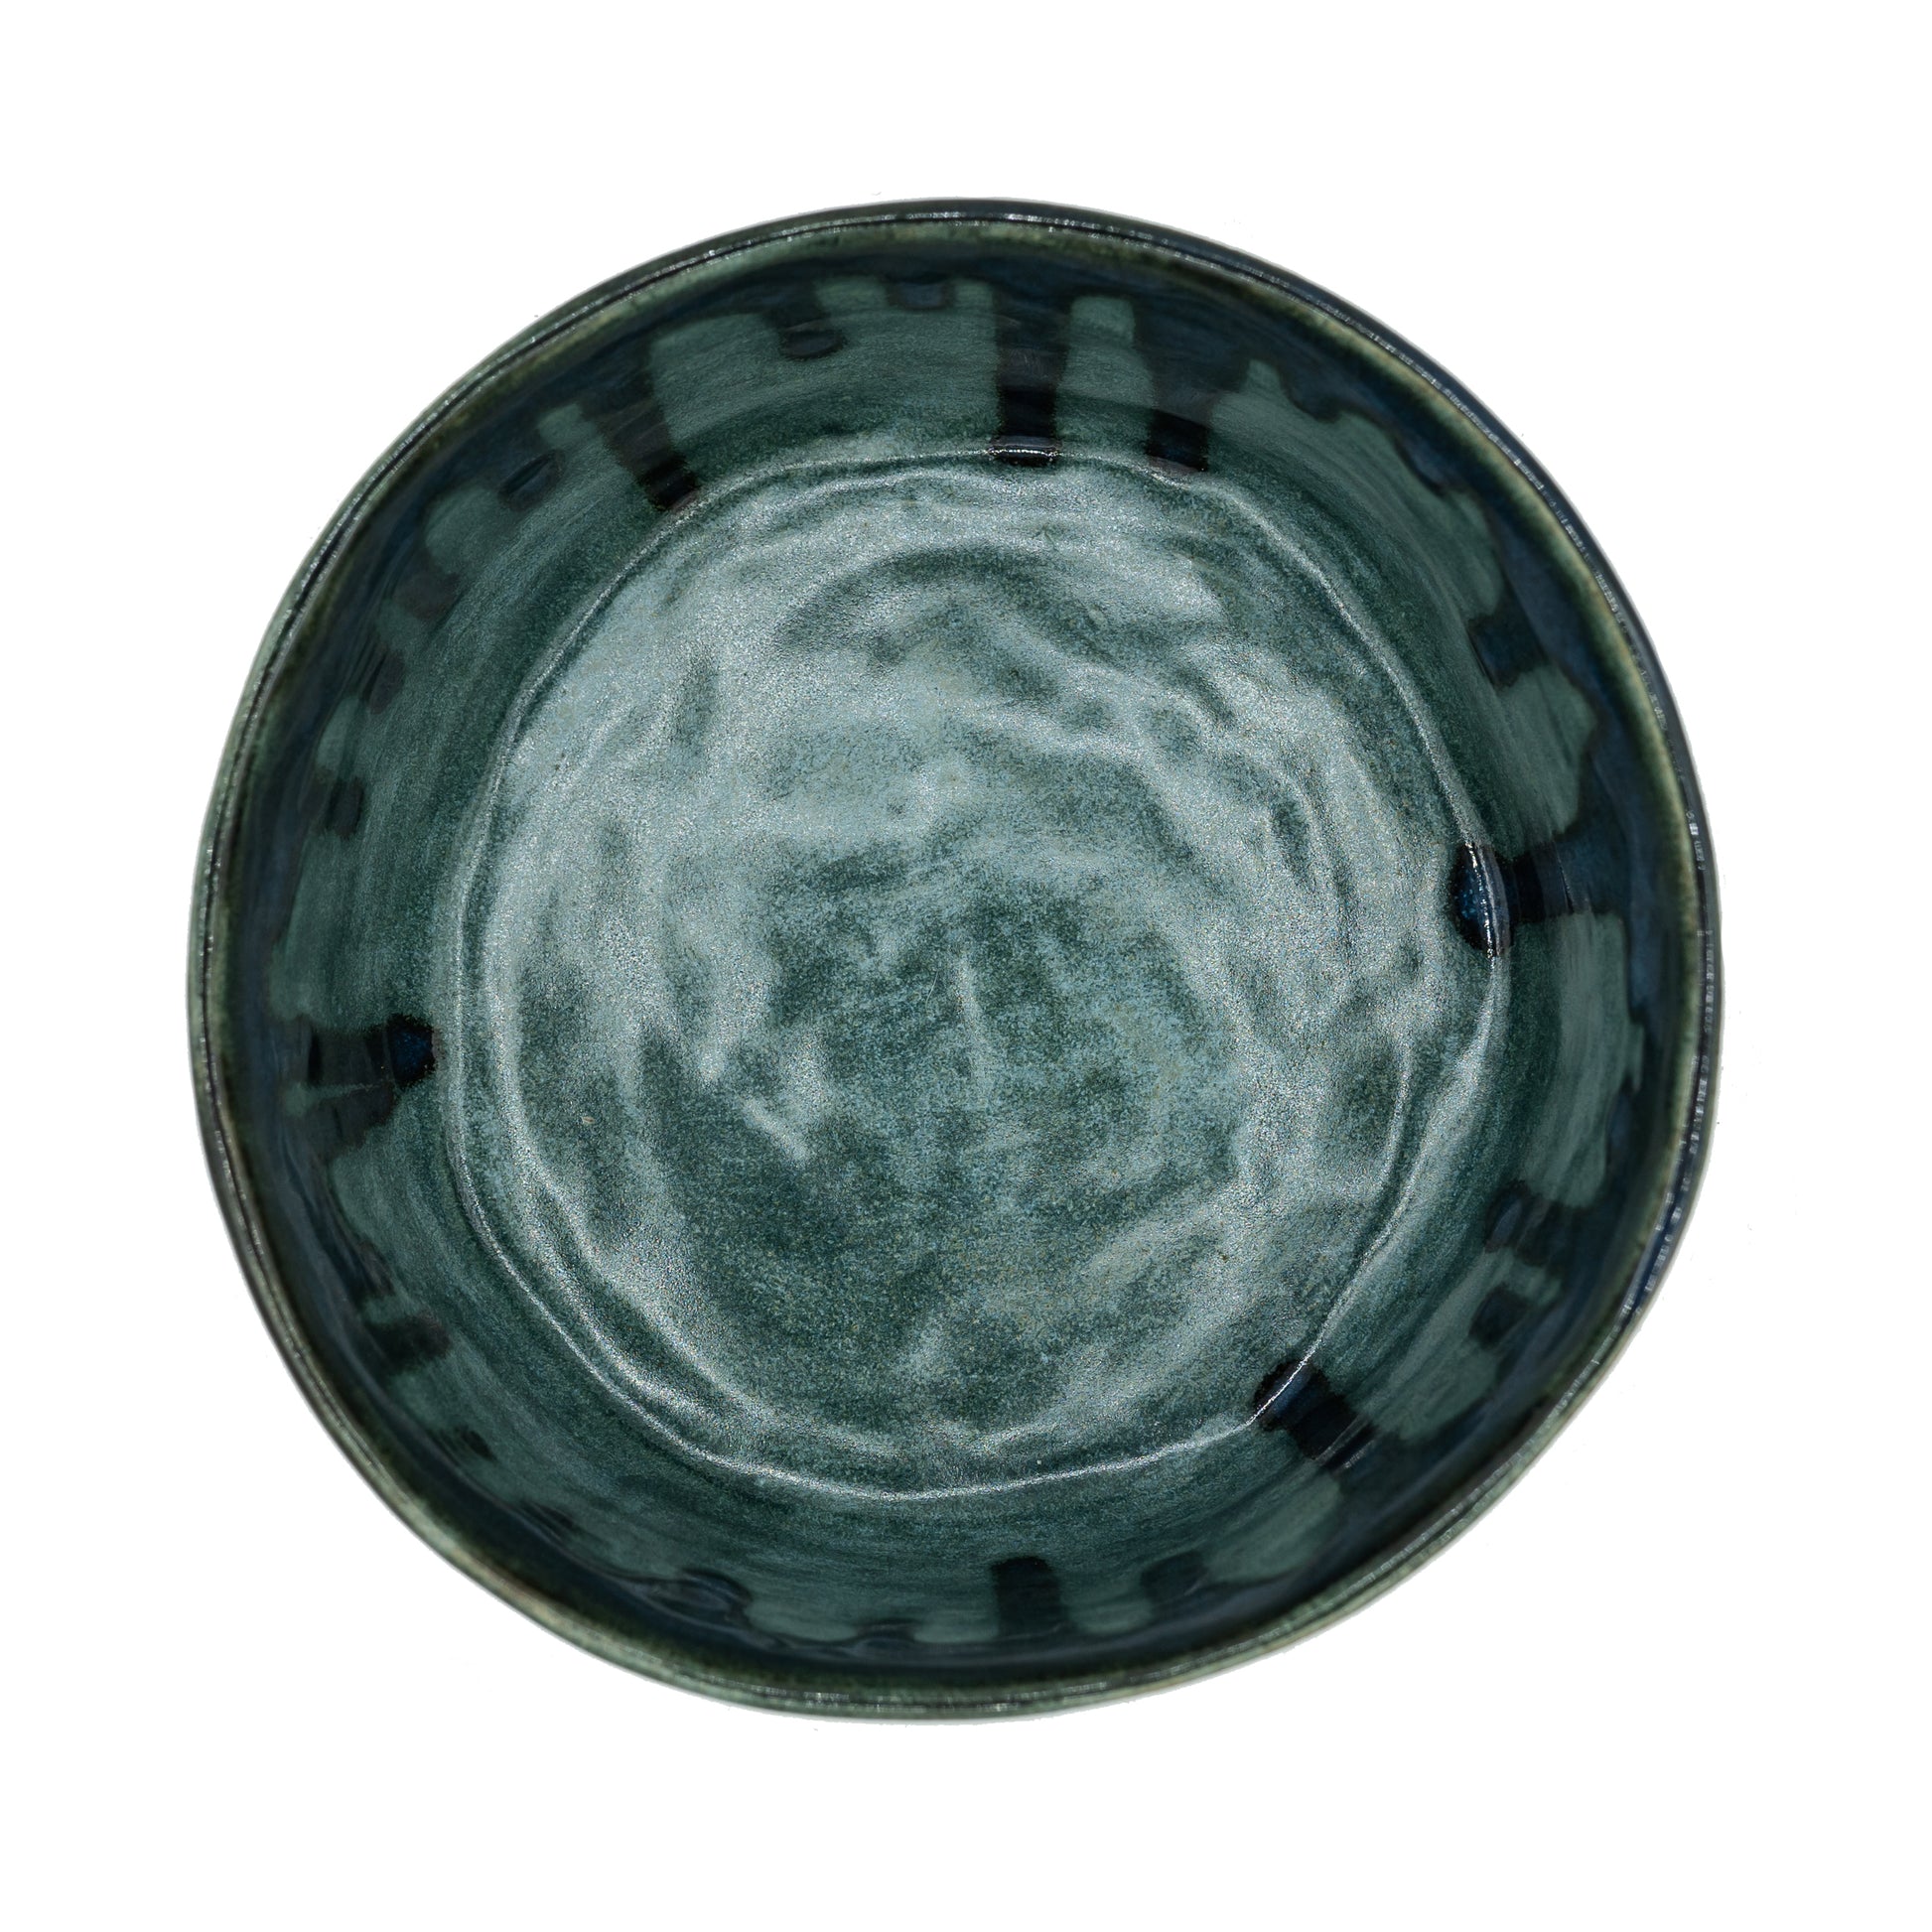 Ocean Dog Bowl Ceramic Bowl - Bandoga Top View